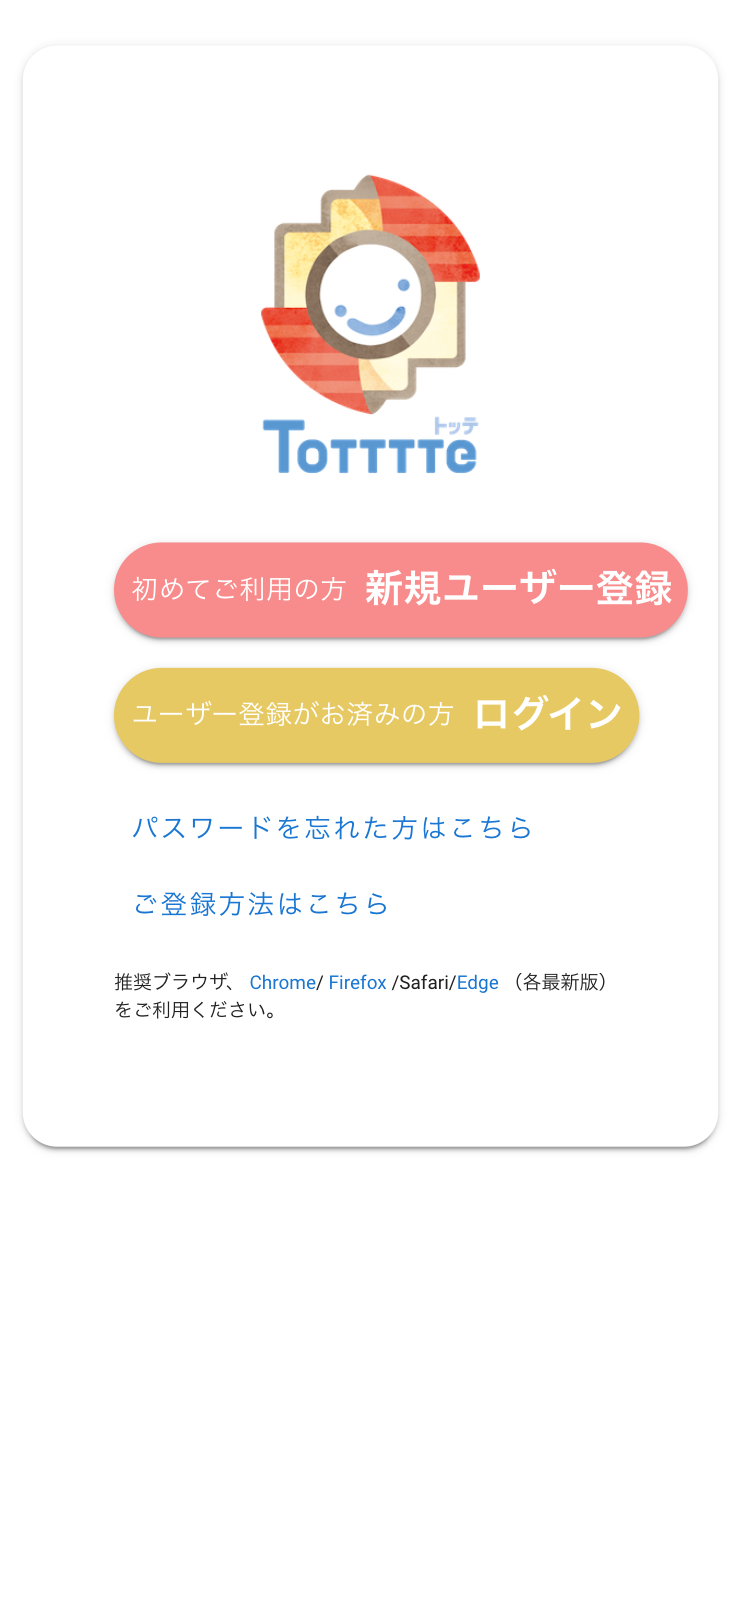 新規ユーザー登録方法 | Totttte